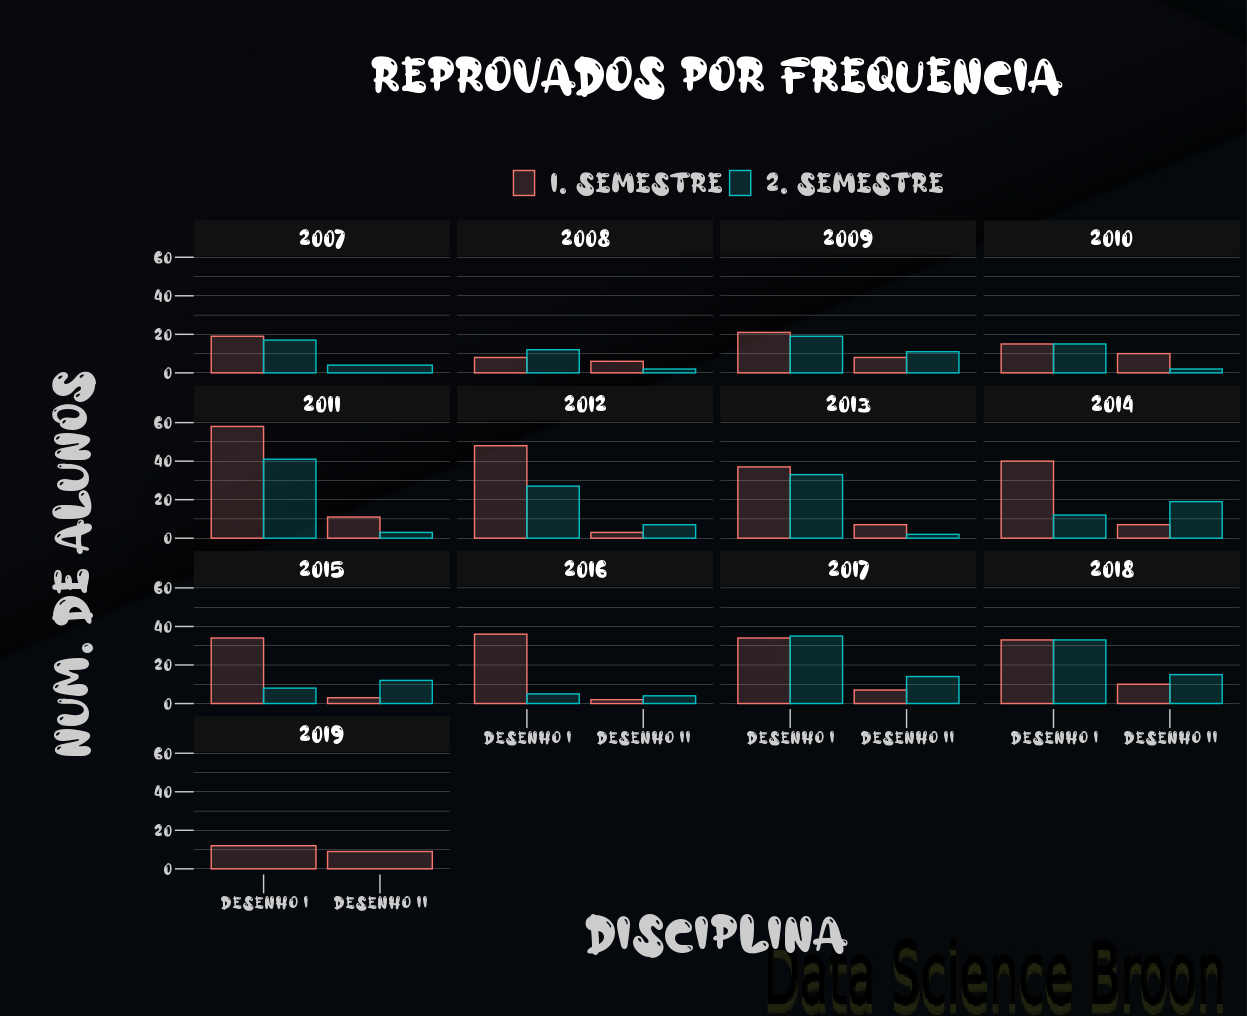 Gráficos de barras com reprovados por semestre, ano e disciplina (n°).